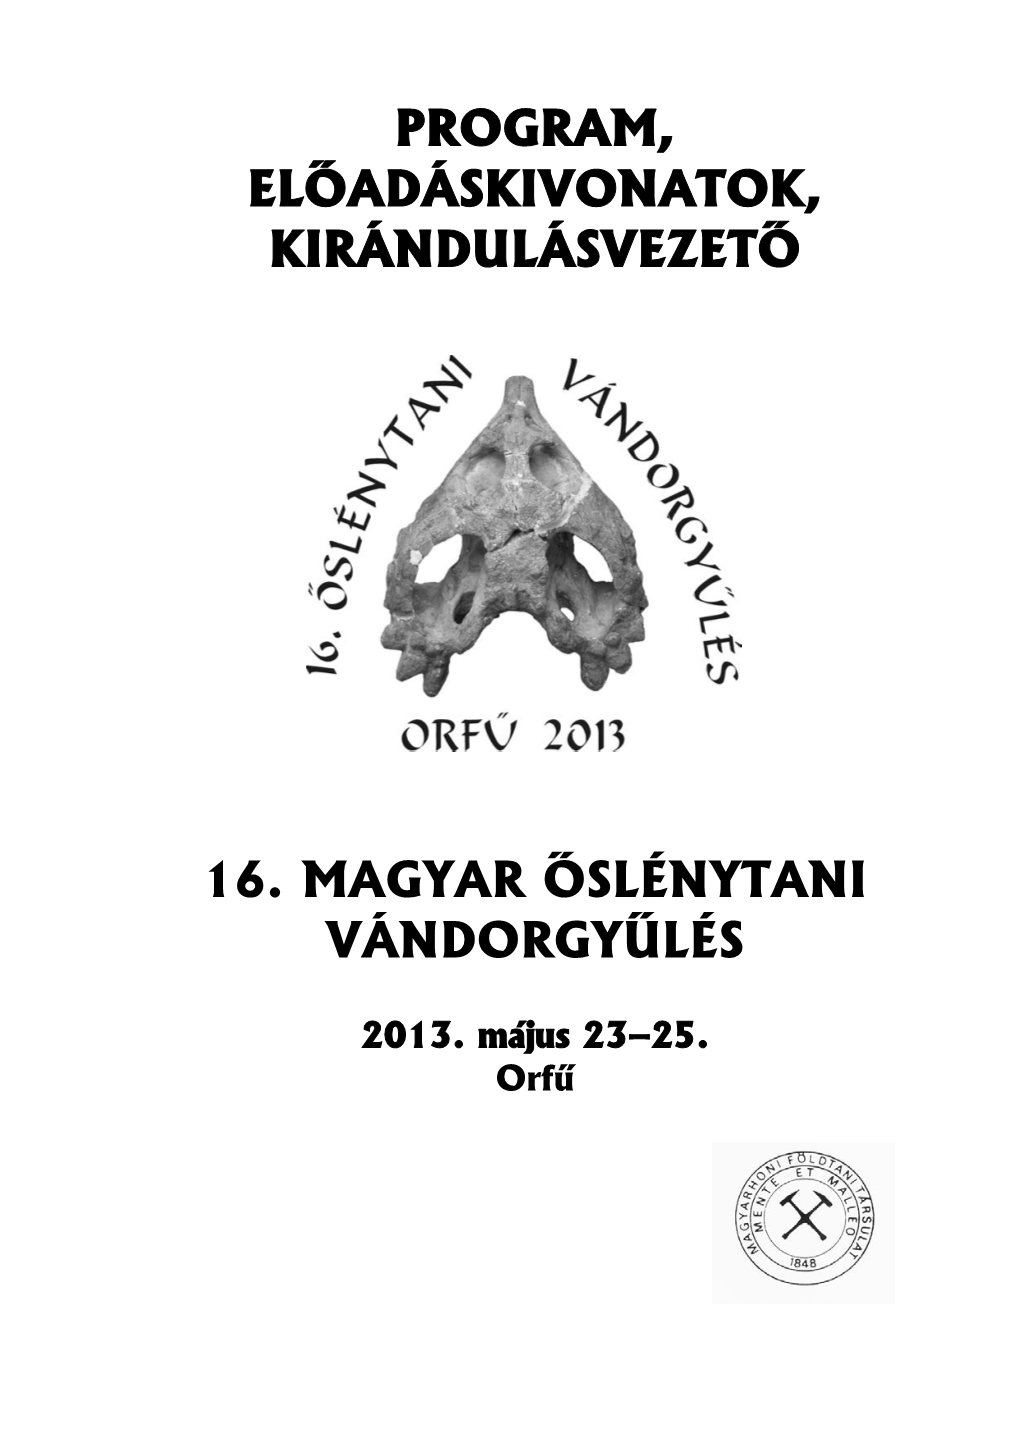 16. Magyar Őslénytani Vándorgyűlés (Orfű, 2013)